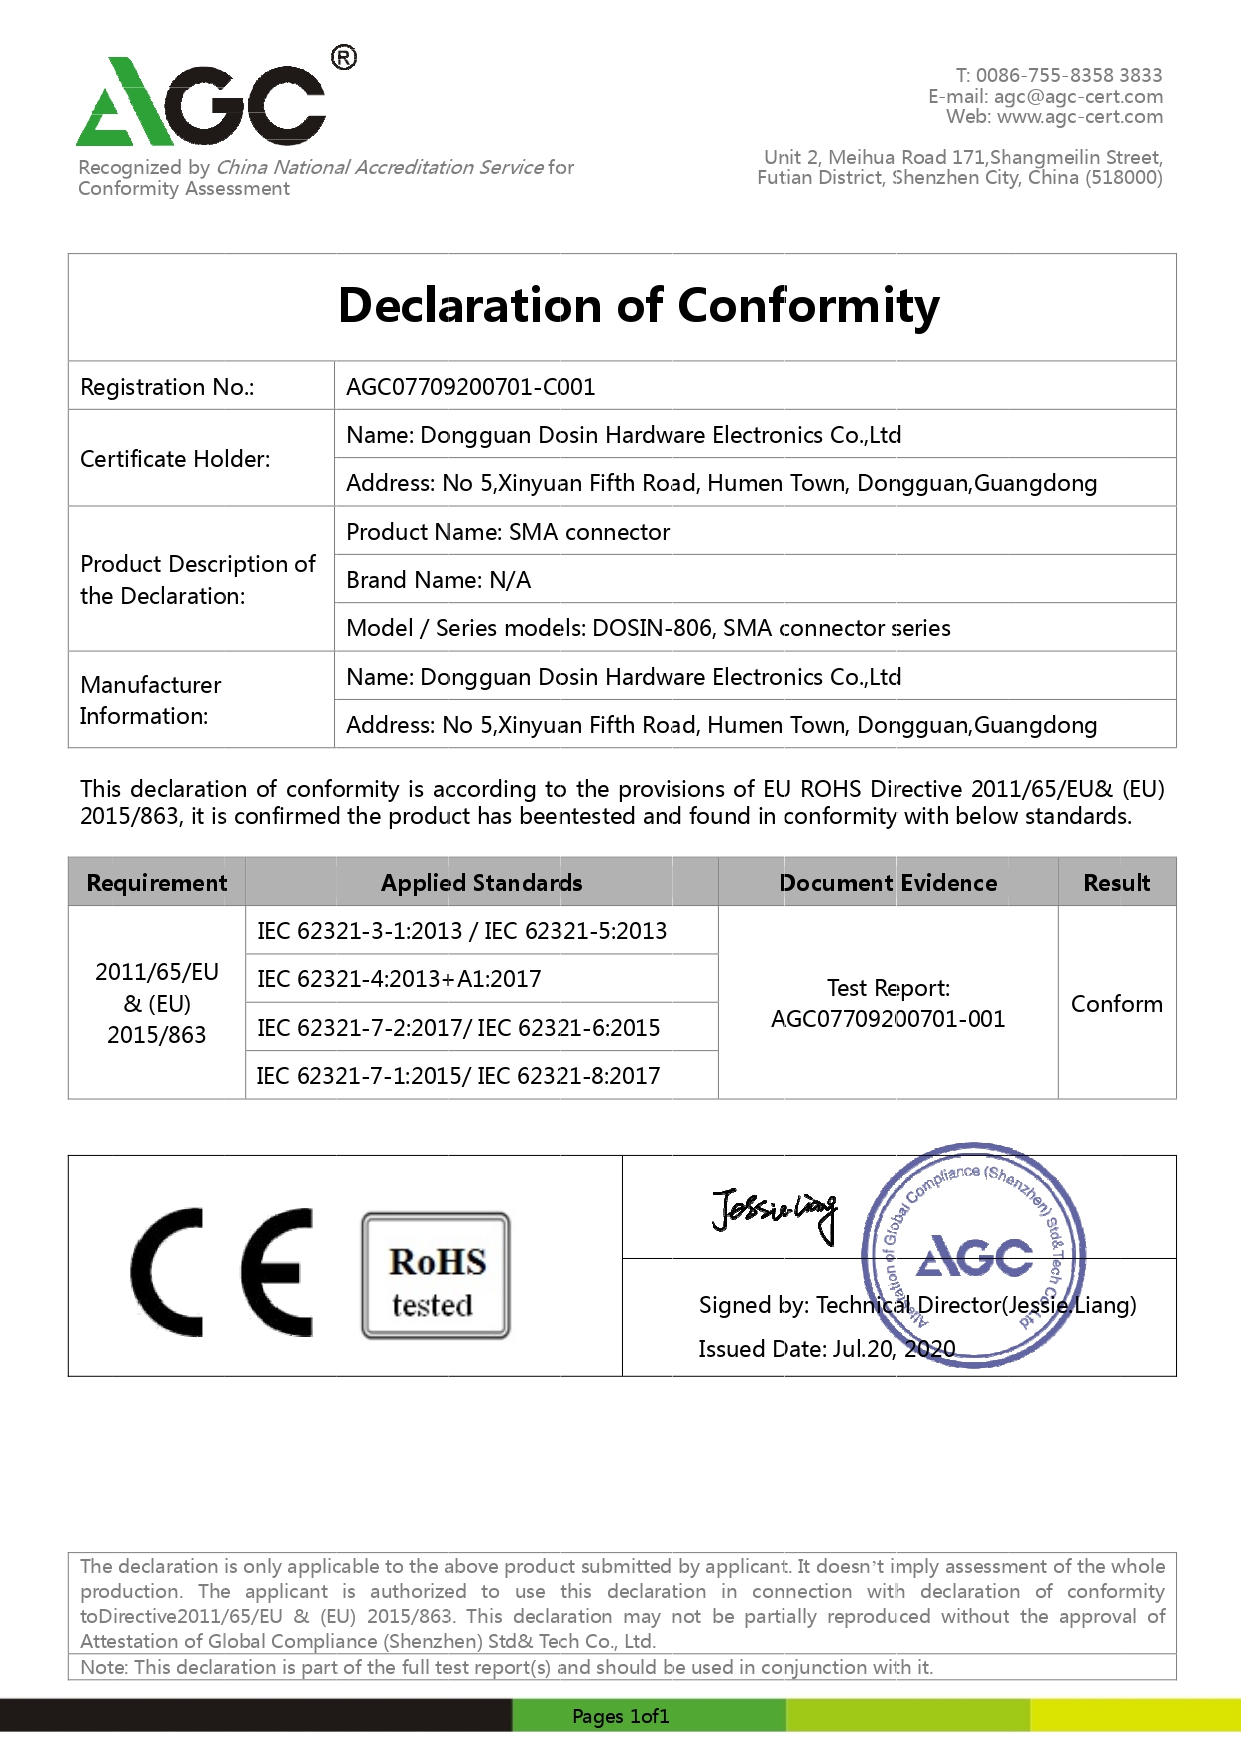 AGC007009200701-C001  CE Certificate  SMA Connector